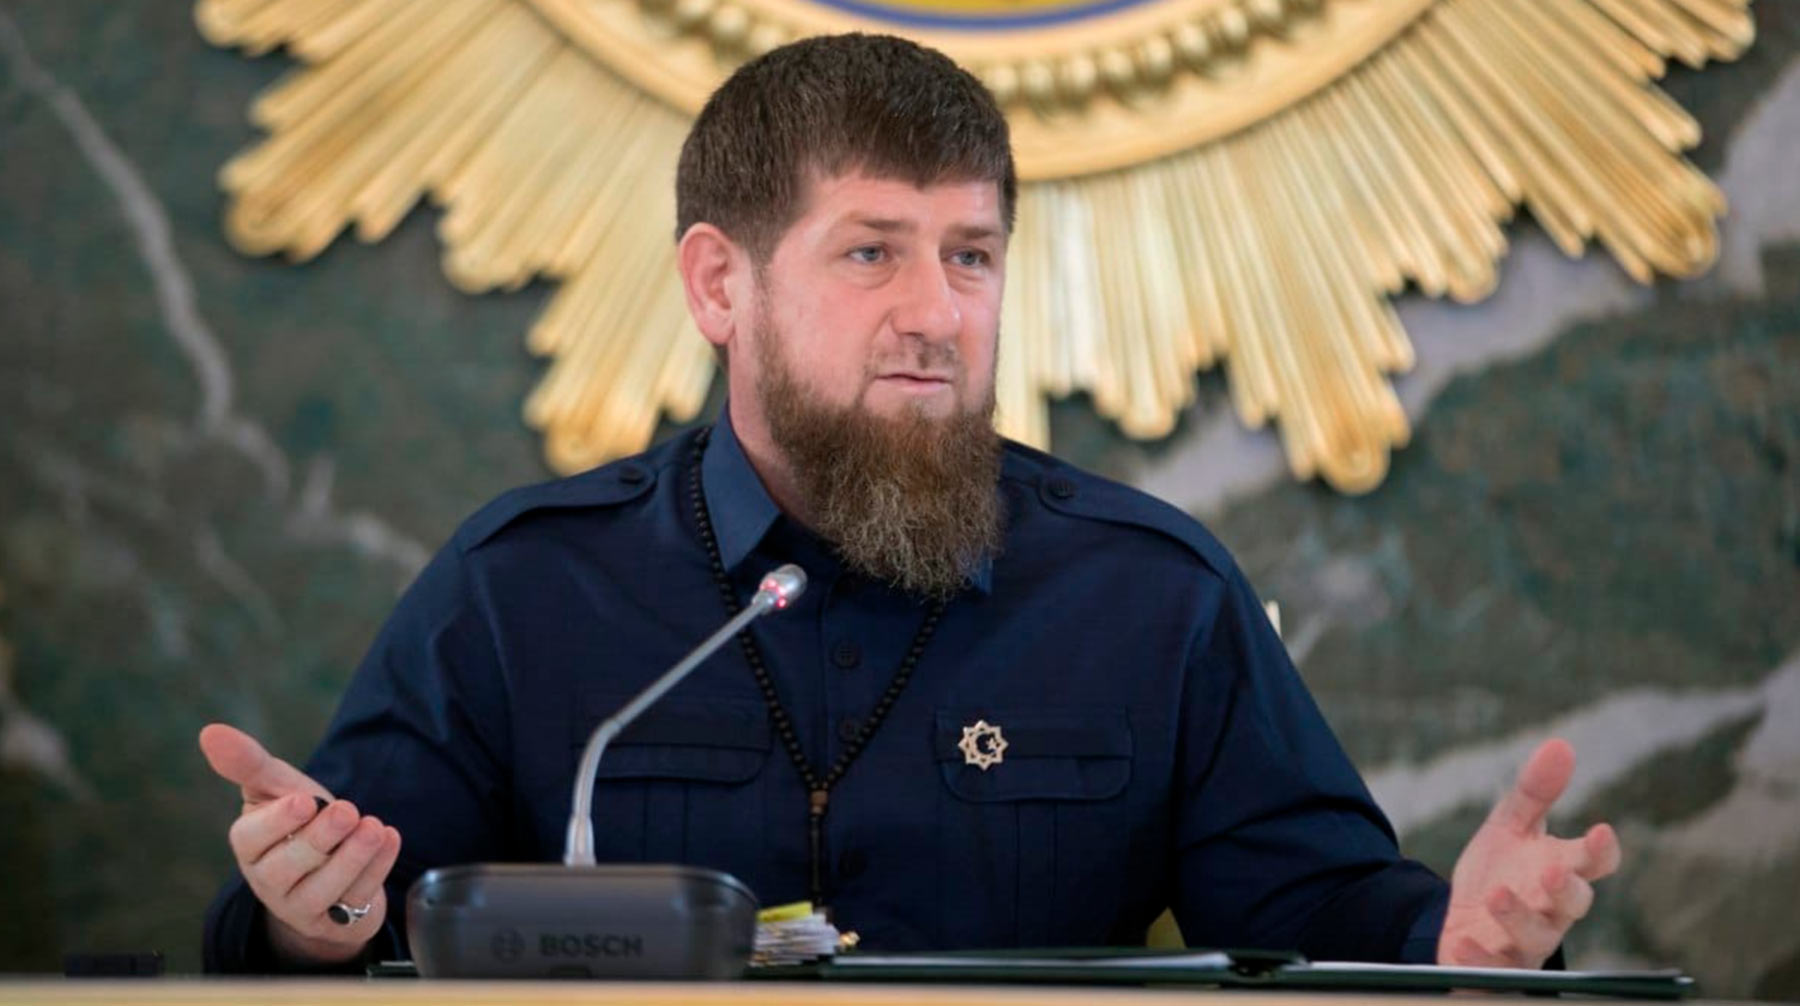 Страница главы Чечни в Instagram уже блокировалась в 2017-м и 2018 году, и Кадыров назвал это «мышиной возней США» Фото: © Вконтакте/Рамзан Кадыров